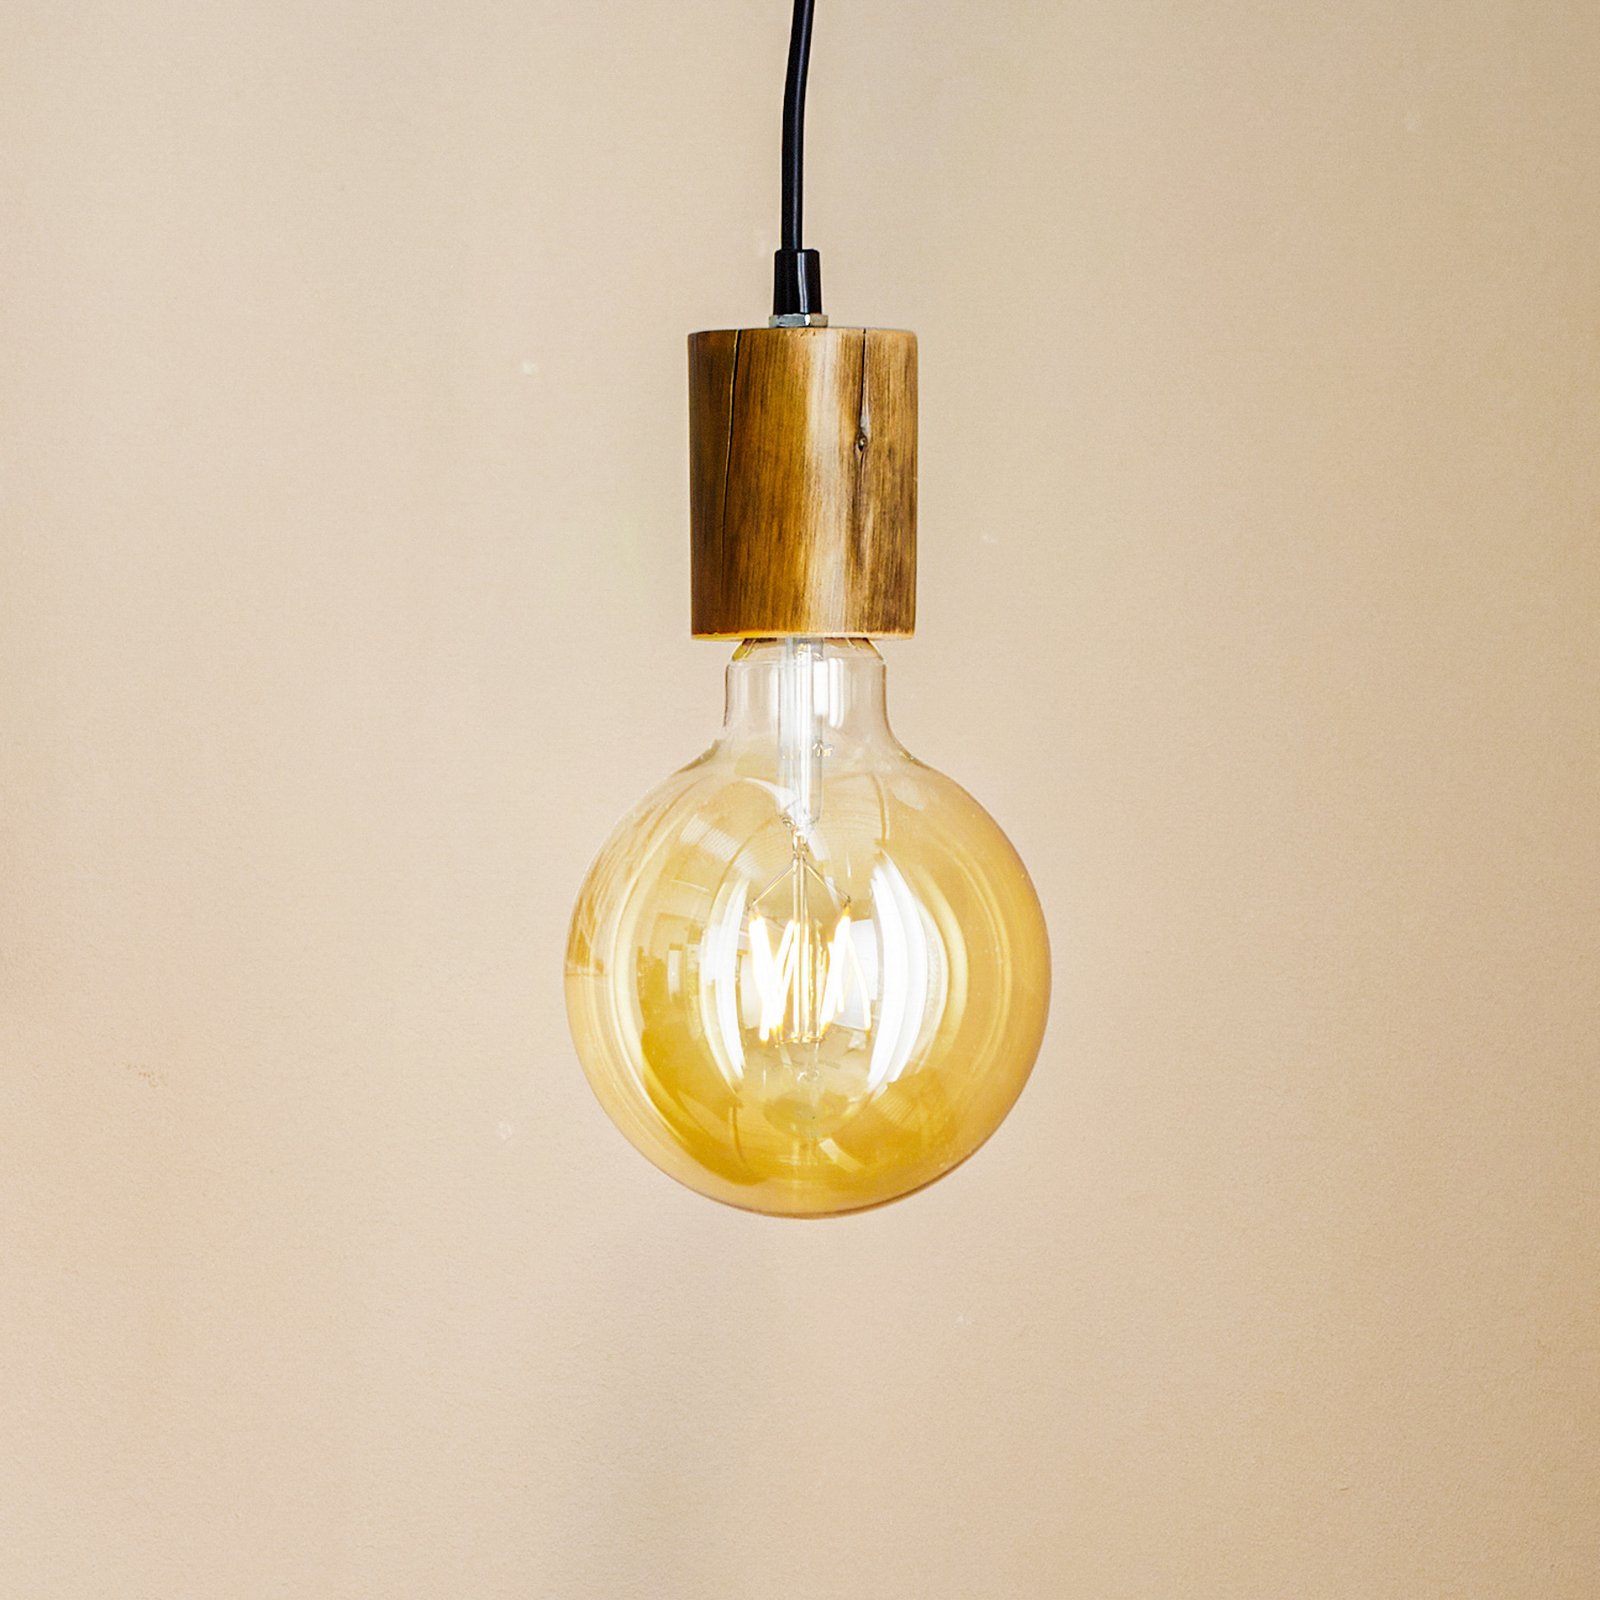 Tronco hanglamp, 1-lamp, houten pendel 8 cm